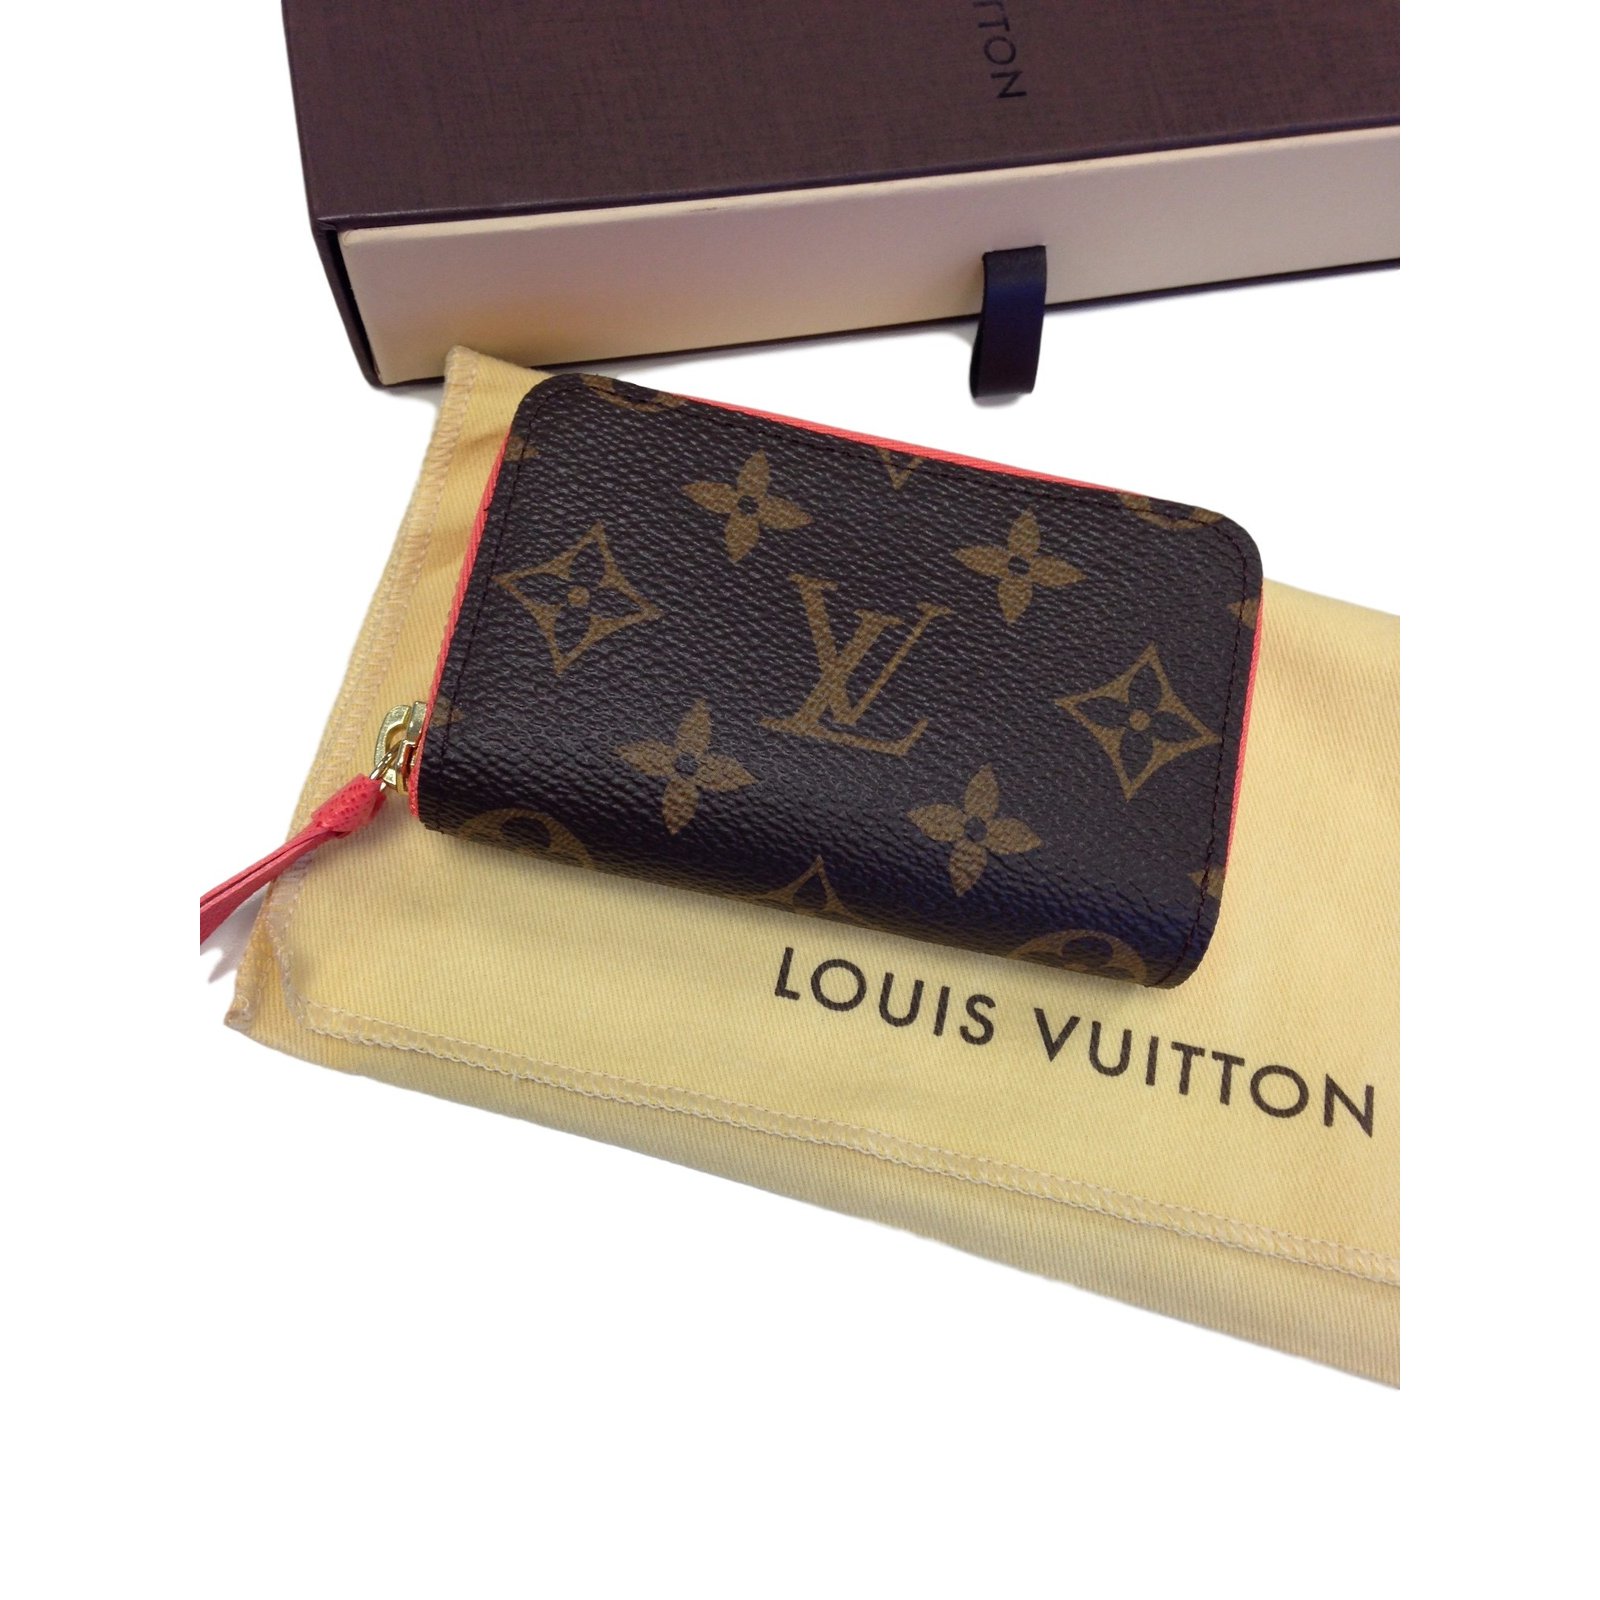 LOUIS VUITTON Monogram Multicartes Zippy Card Holder - More Than